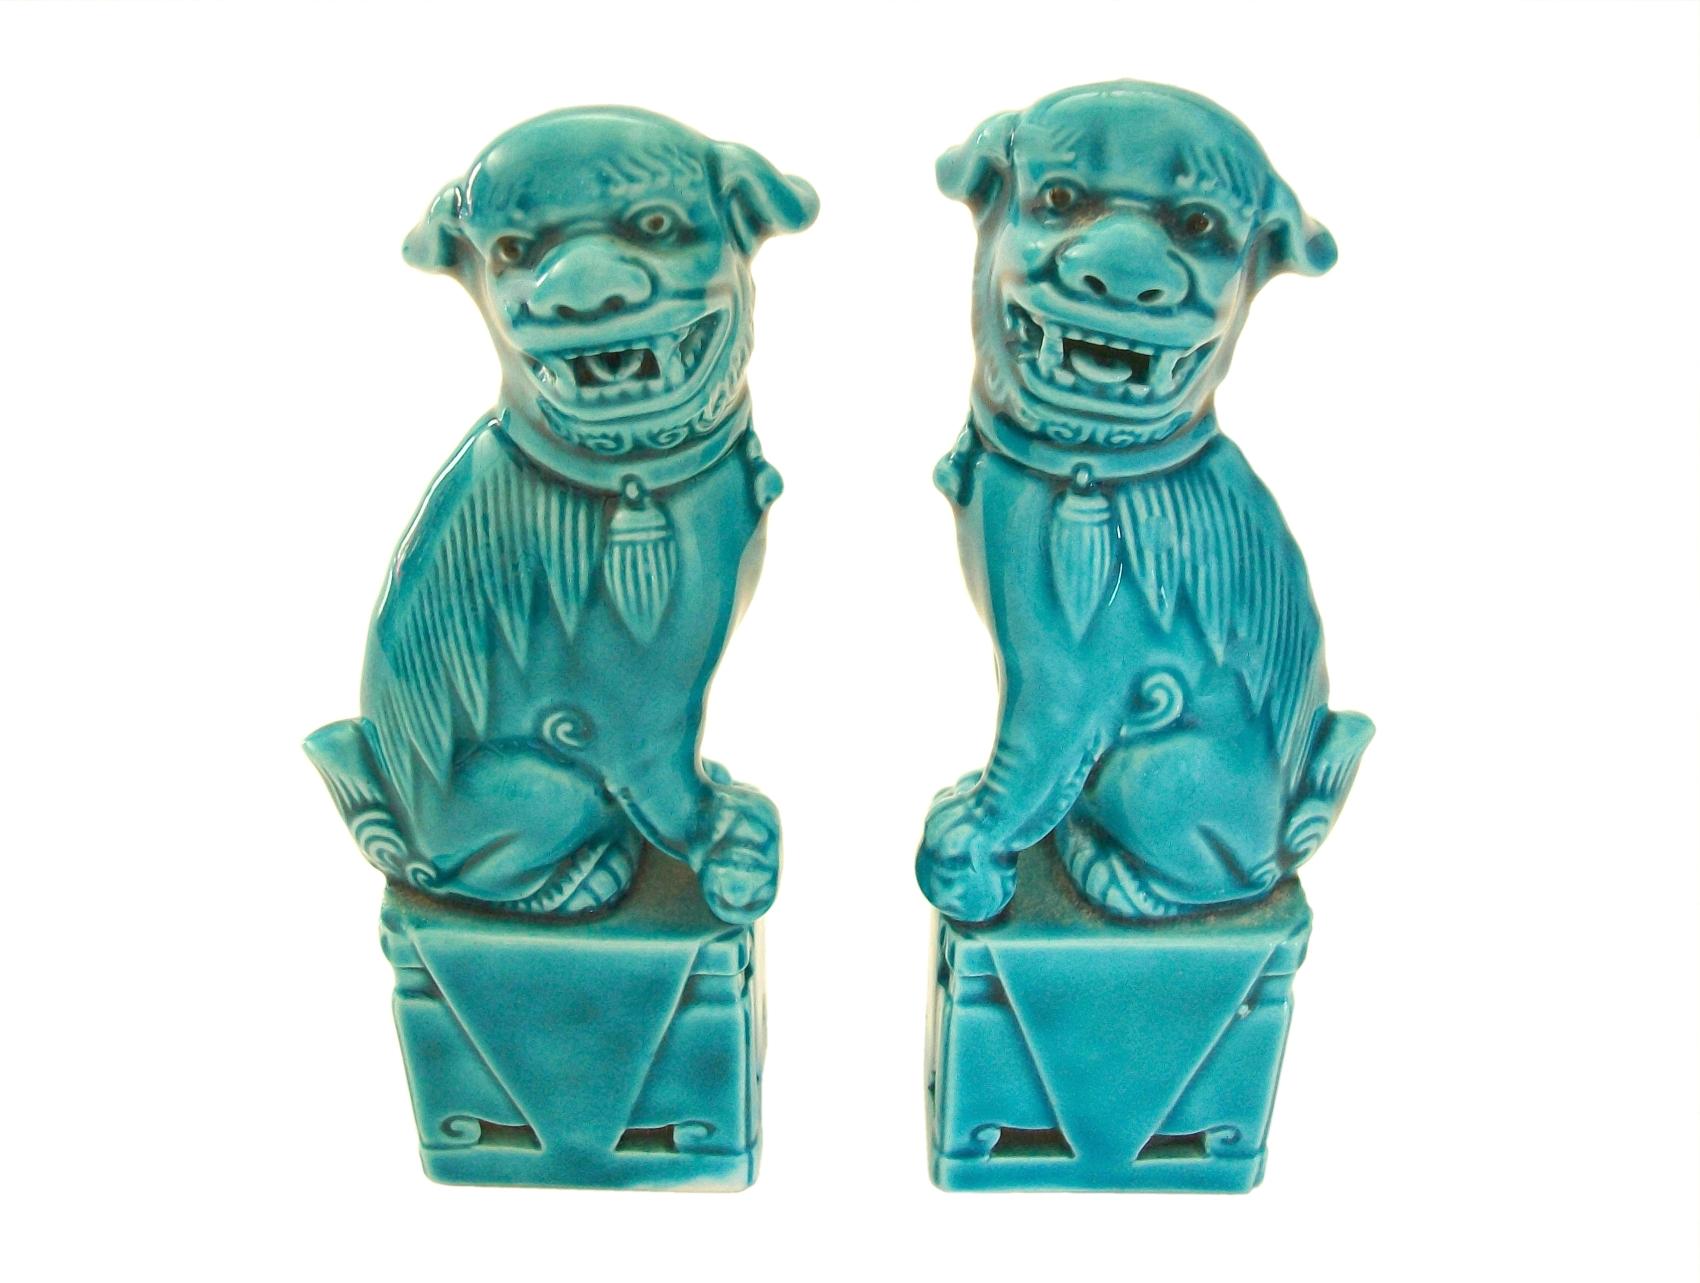 Miniatur-Paar von Vintage türkis glasierte Keramik Foo Dogs - geformte Formen - handbemalt glänzende Glasur - unsigned - China - circa 1980's.

Hervorragender Vintage-Zustand - kleine Glasurabplatzer an einem Ohr (sieht aus wie dünne Glasurflächen -